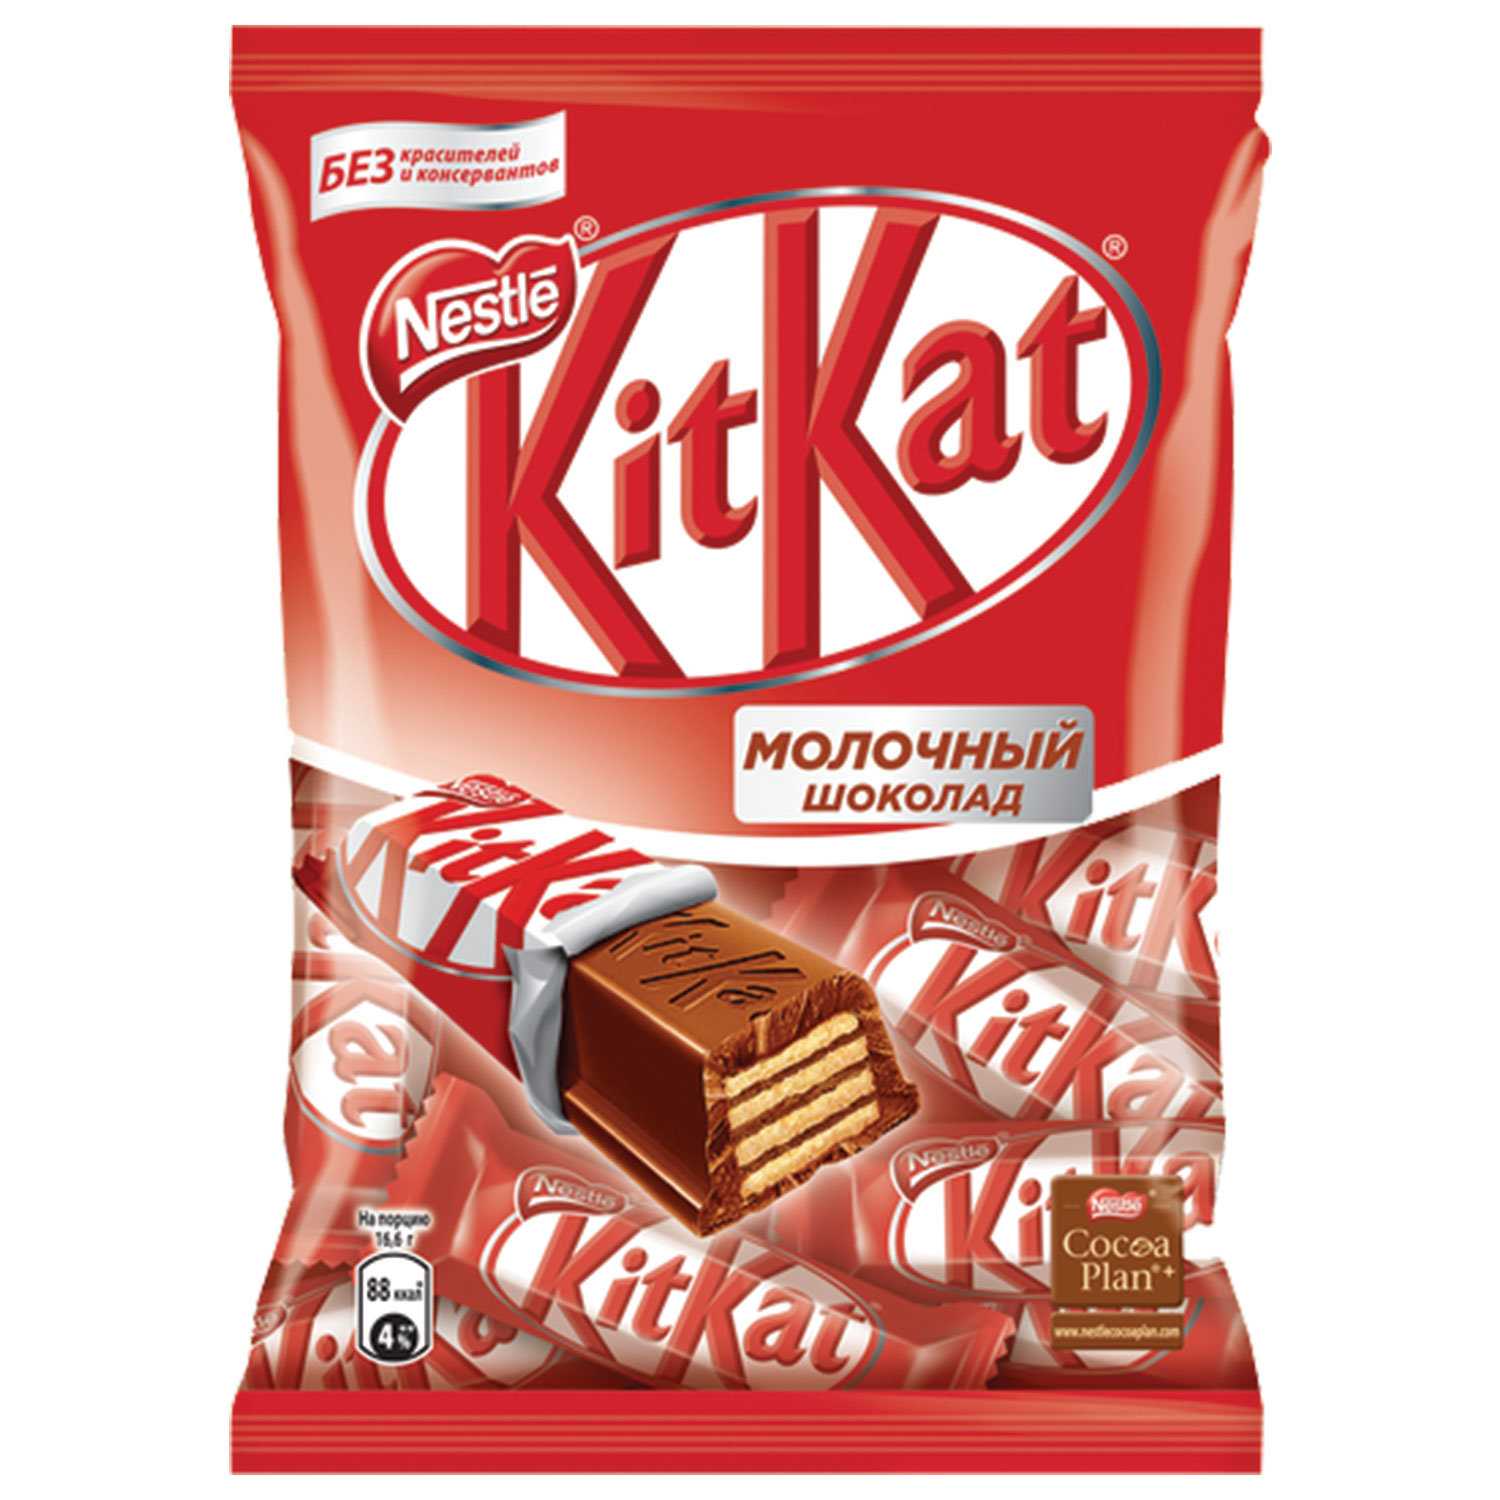 Шоколадный батончик kitkat — какие витамины содержит